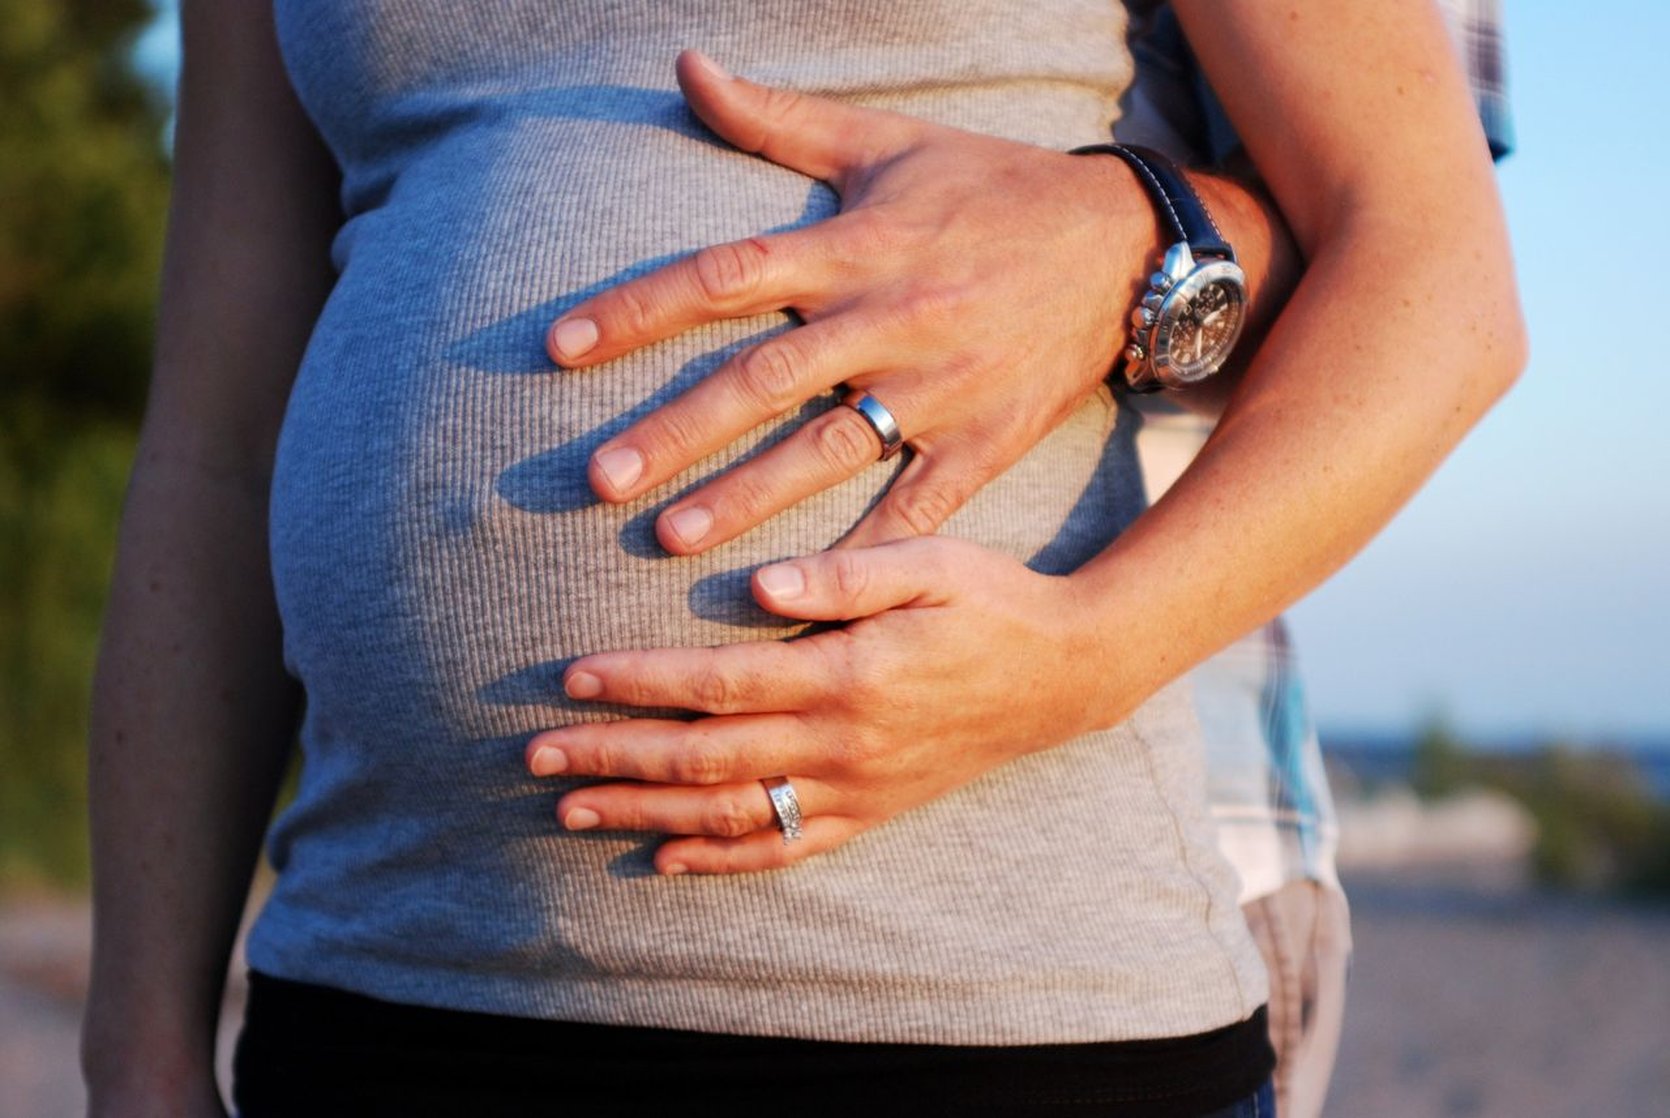 Trimbos in gesprek met (rokende) partners en familie van zwangeren over stoppen met roken